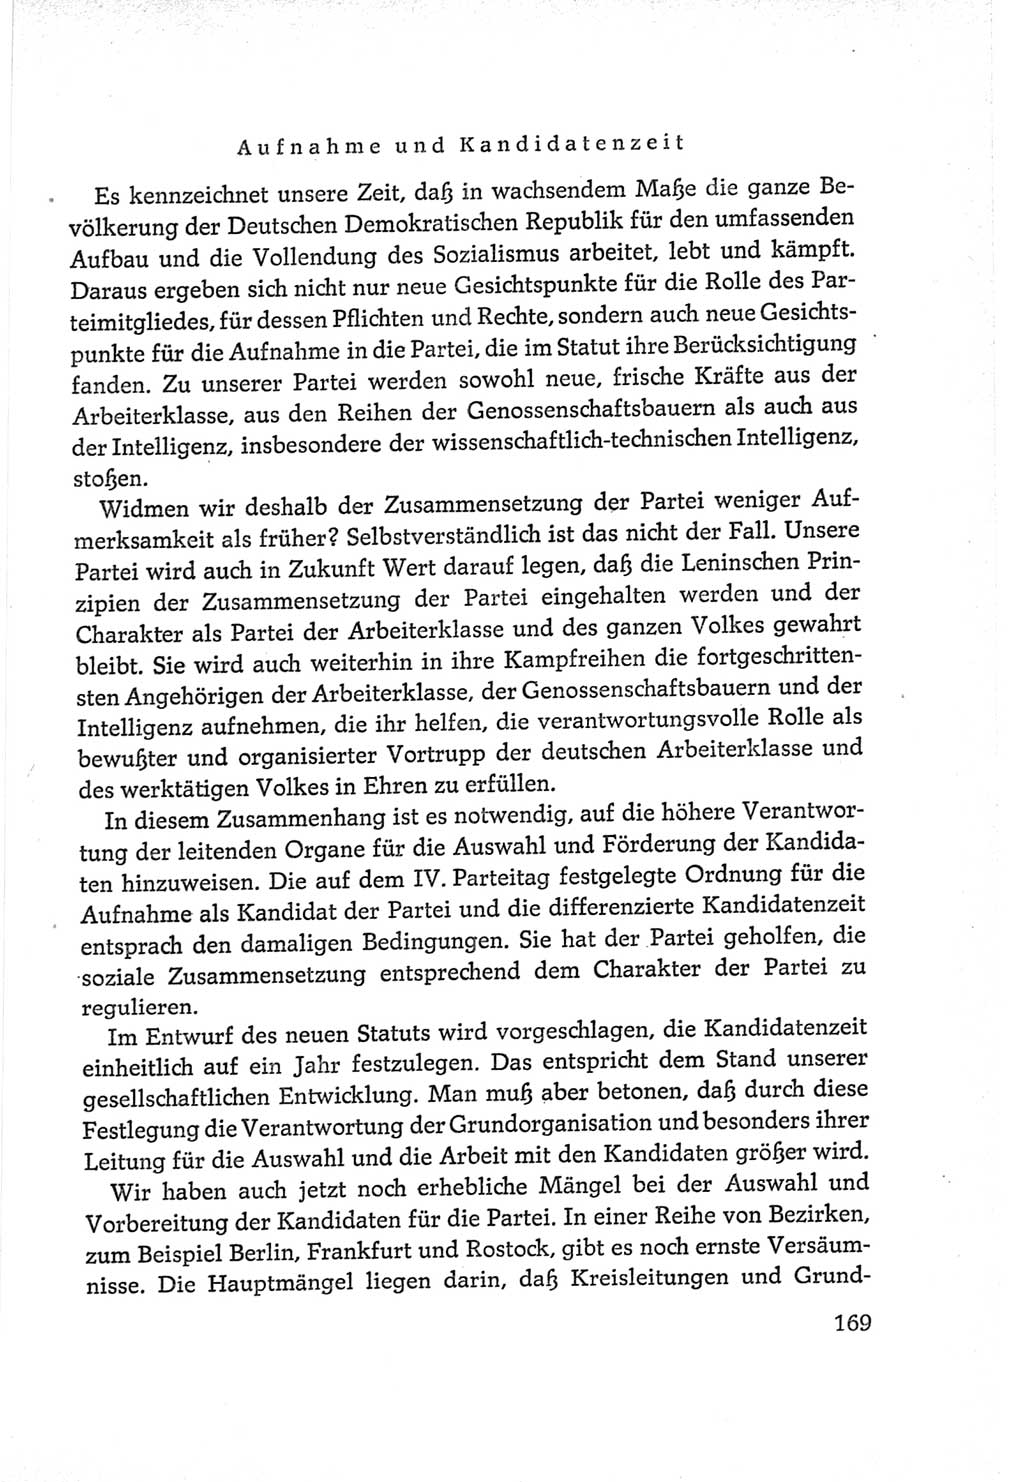 Protokoll der Verhandlungen des Ⅵ. Parteitages der Sozialistischen Einheitspartei Deutschlands (SED) [Deutsche Demokratische Republik (DDR)] 1963, Band Ⅱ, Seite 169 (Prot. Verh. Ⅵ. PT SED DDR 1963, Bd. Ⅱ, S. 169)